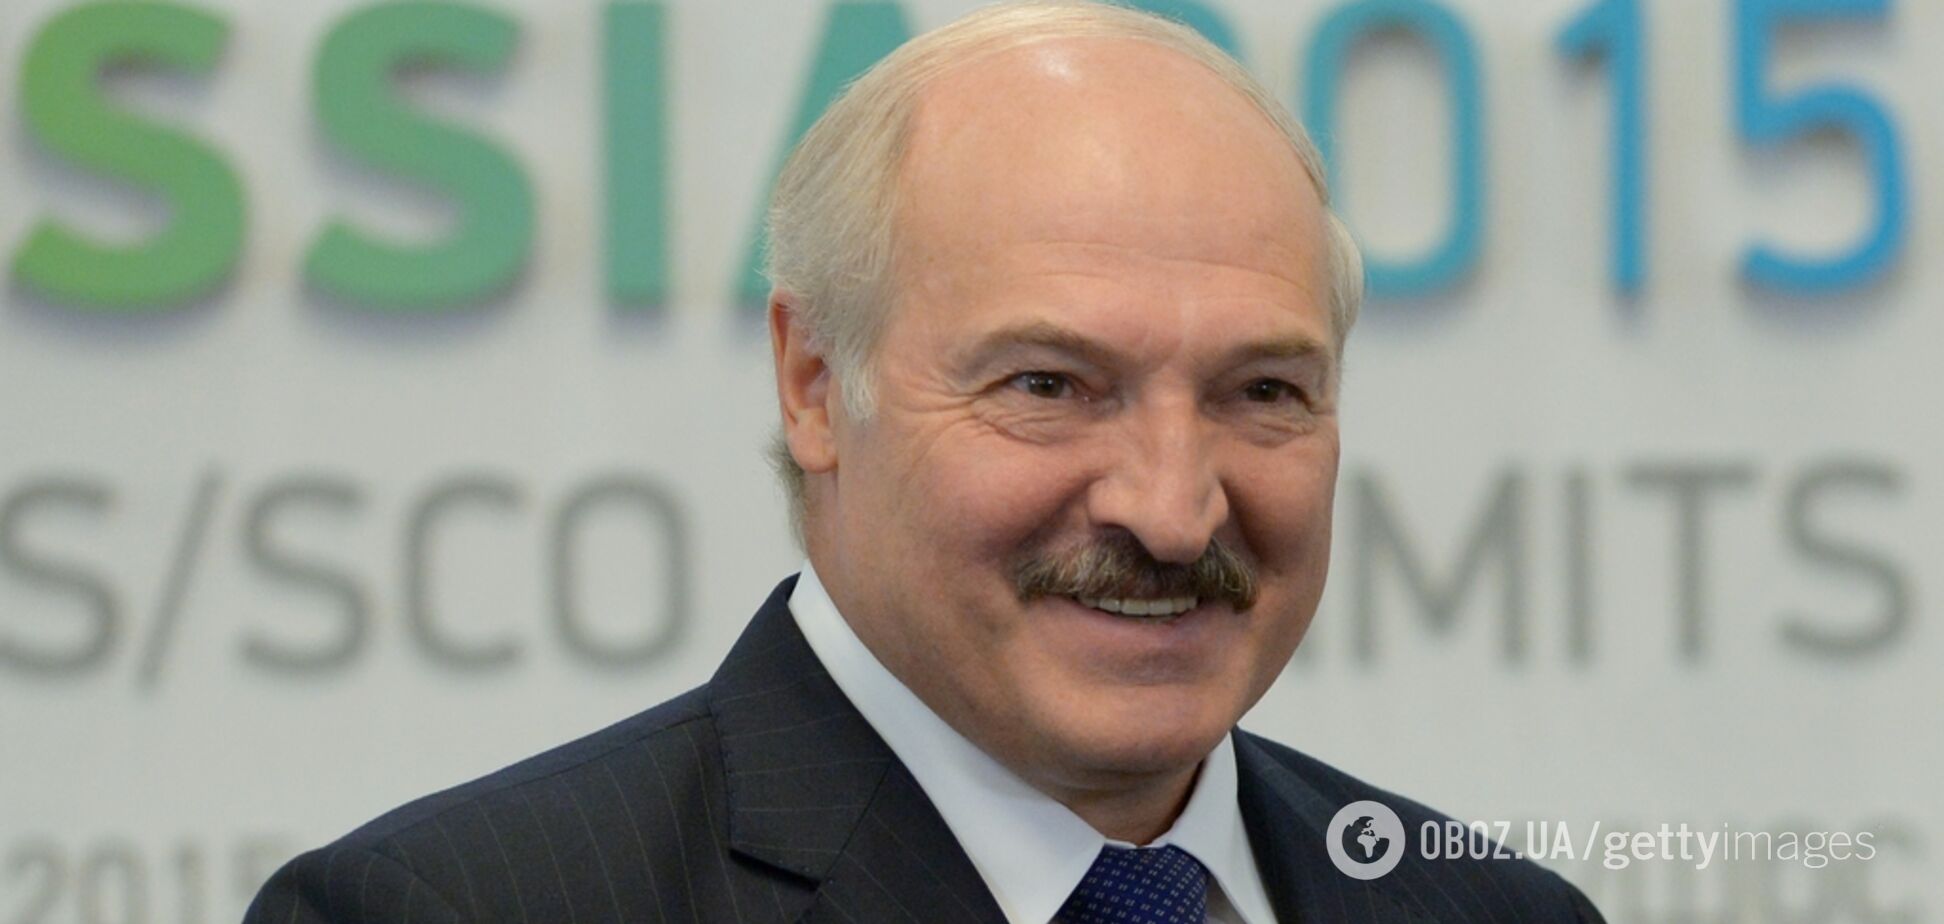 'А то будут обсасывать!' Лукашенко пригрозил 'закрыть рты' белорусам